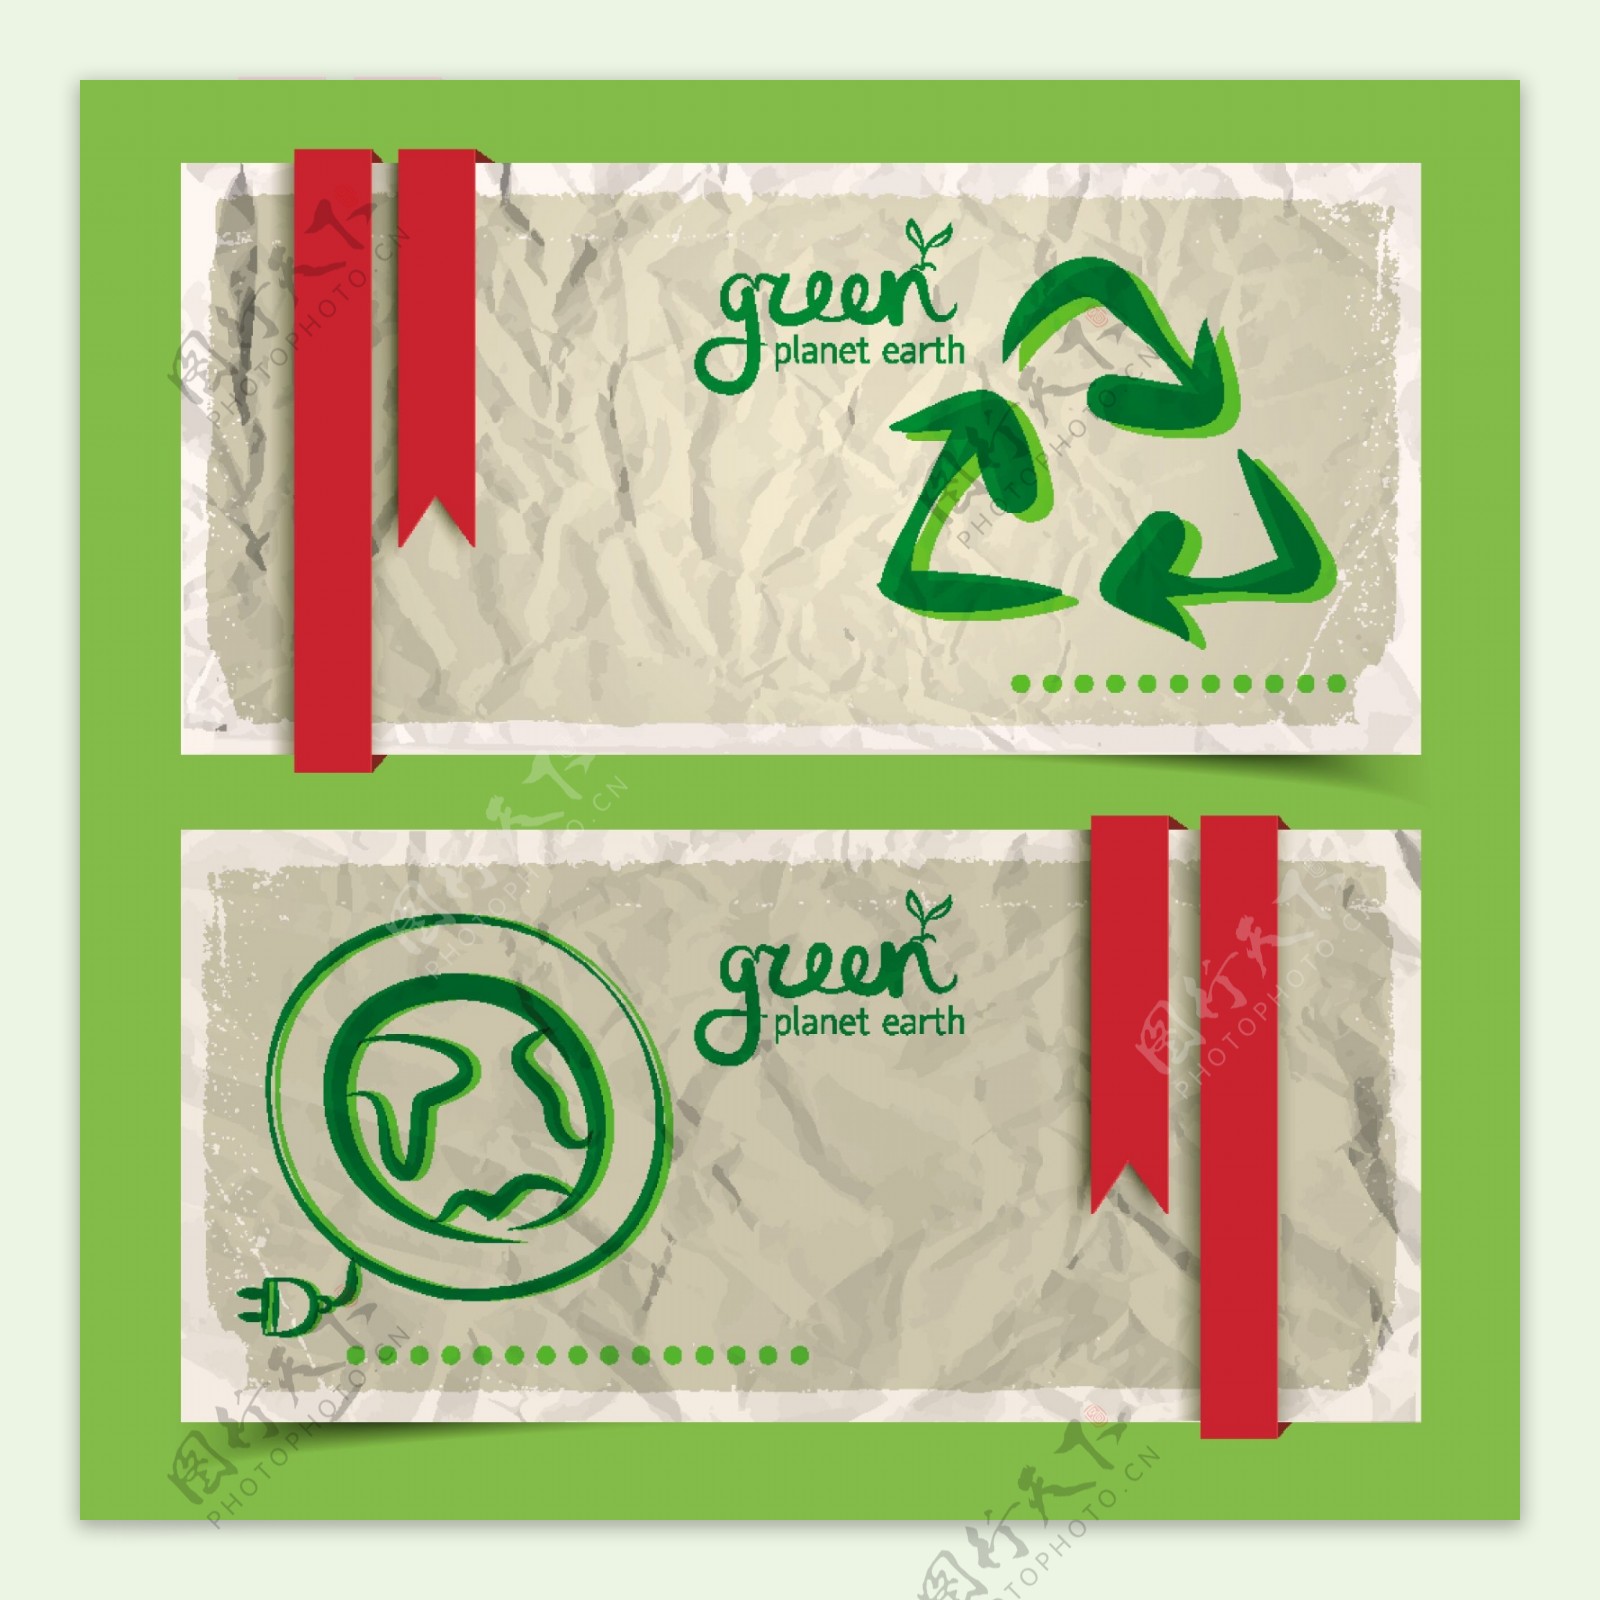 绿色环保主题banner设计矢量素材